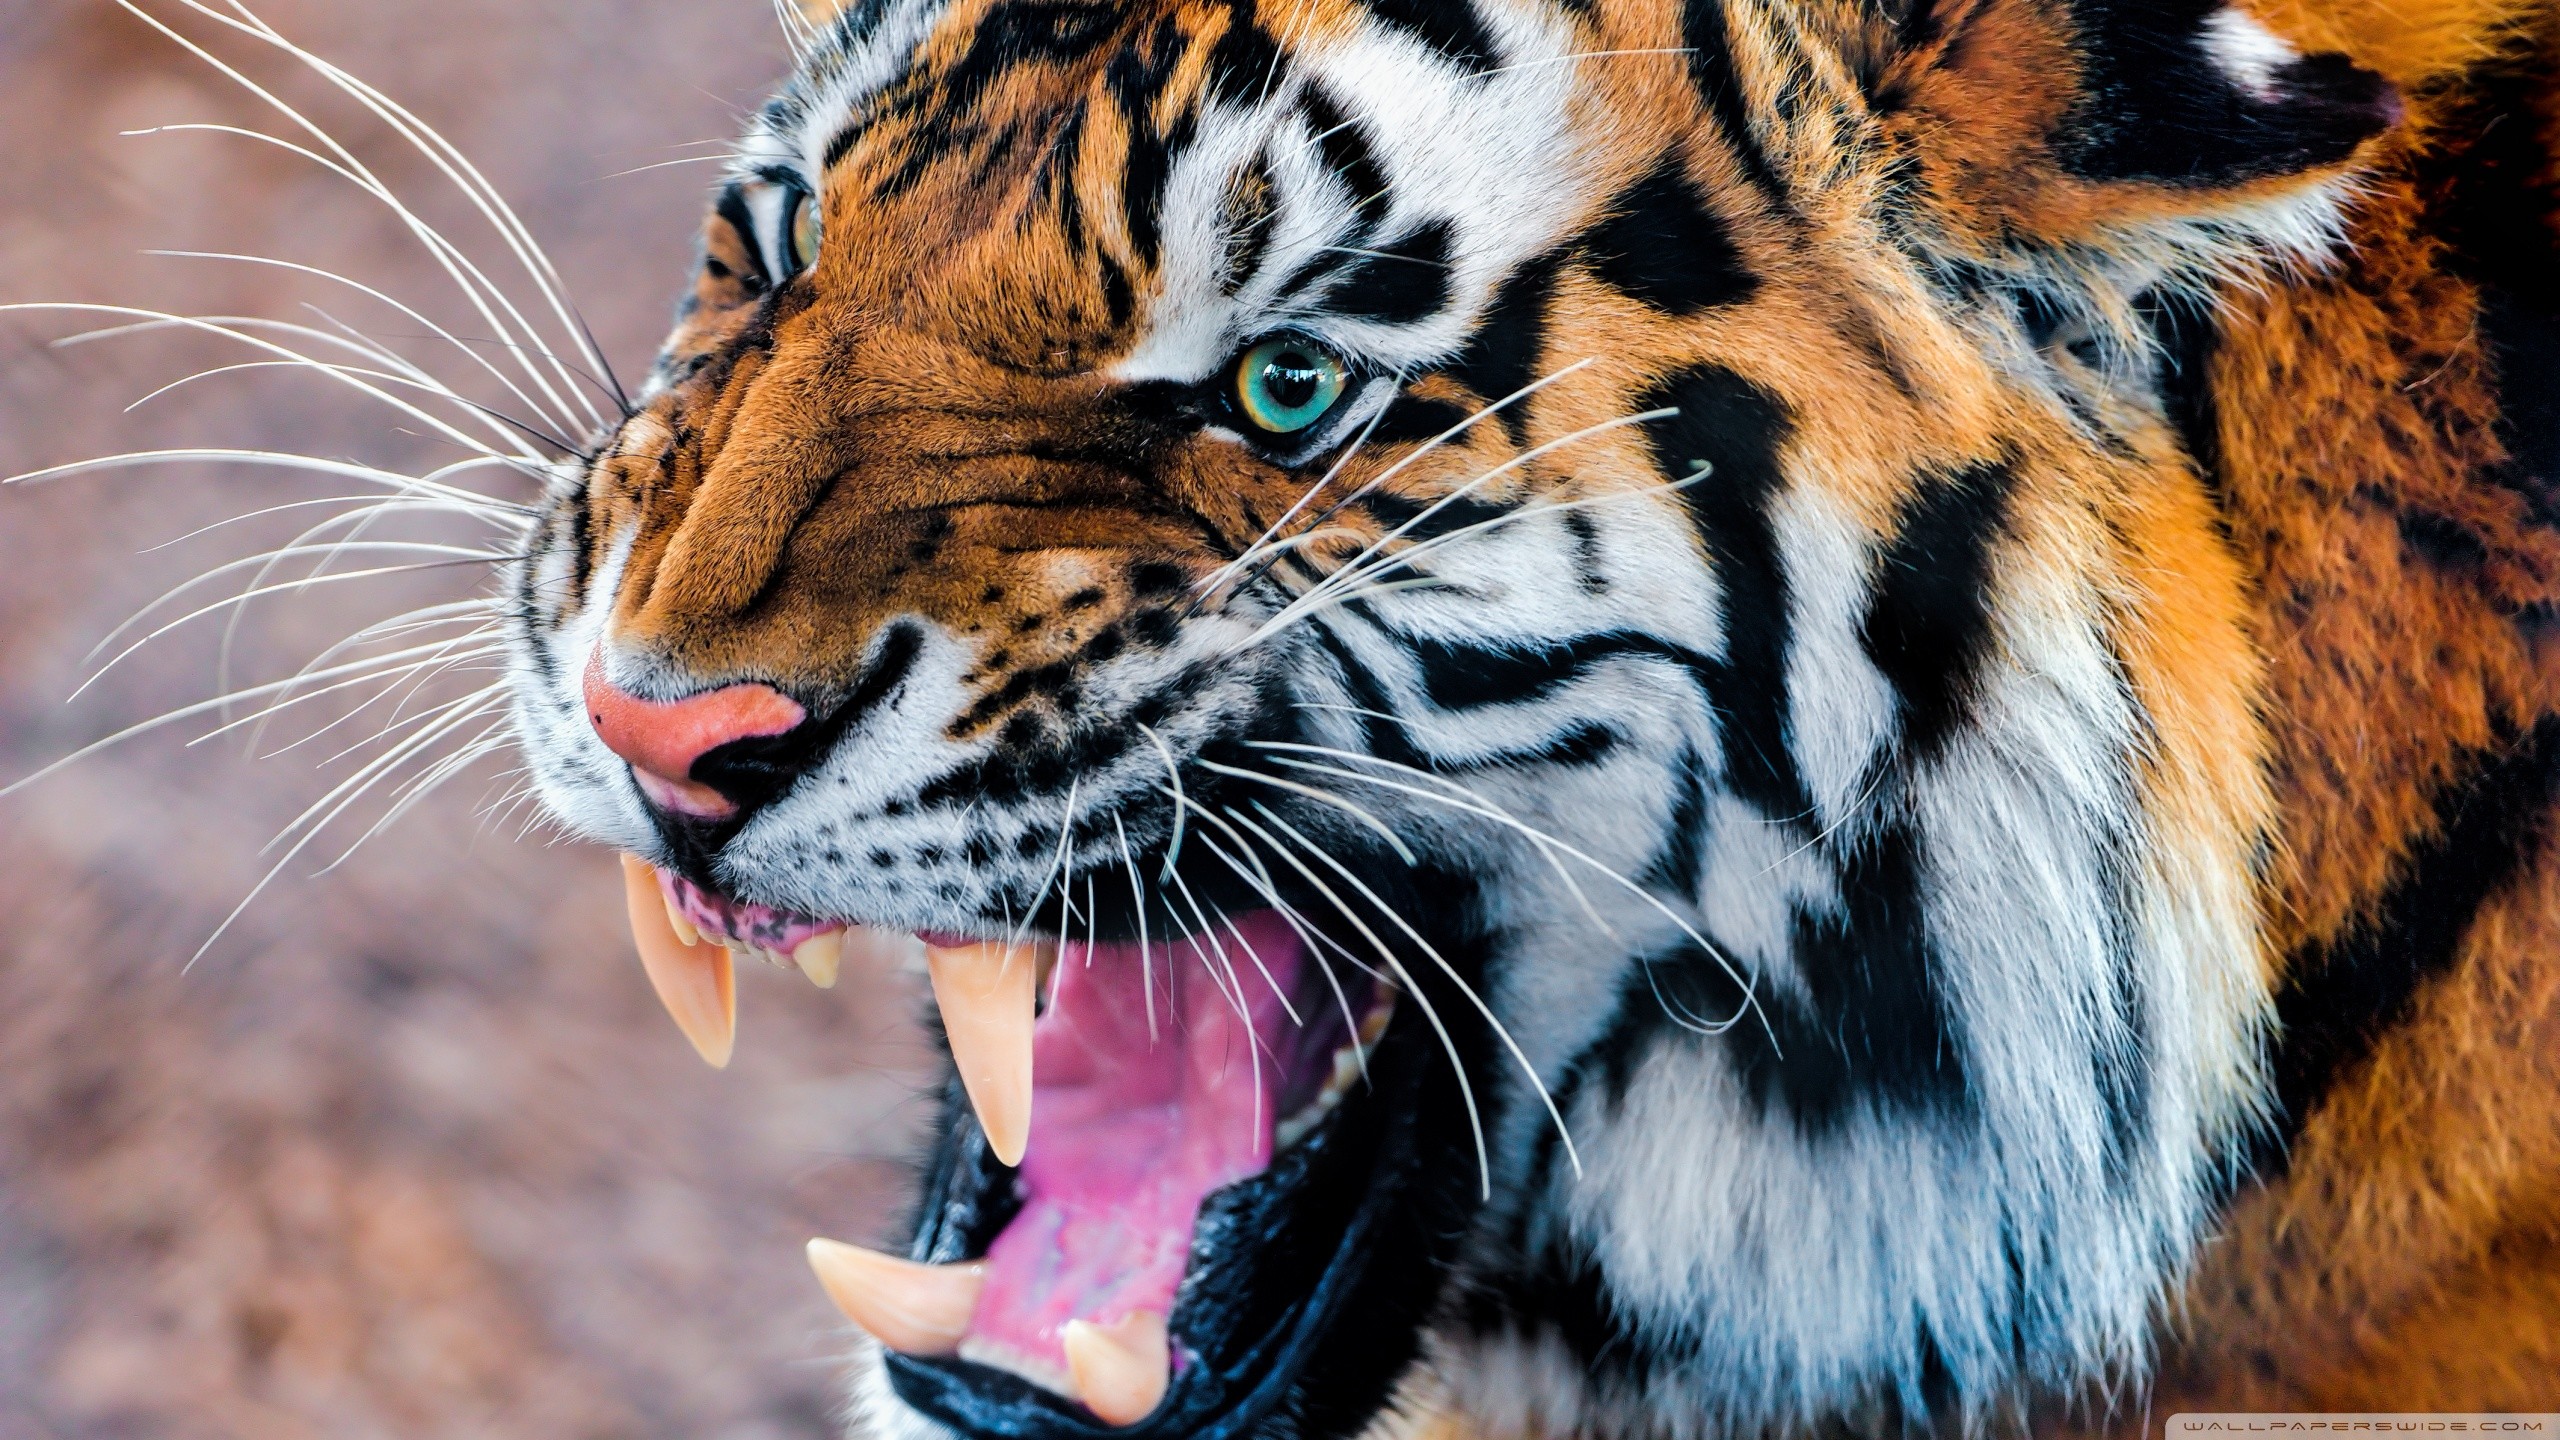 Tiger Wallpaper 3d Desktop - 1080p Tiger Images Hd - 2560x1440 Wallpaper -  